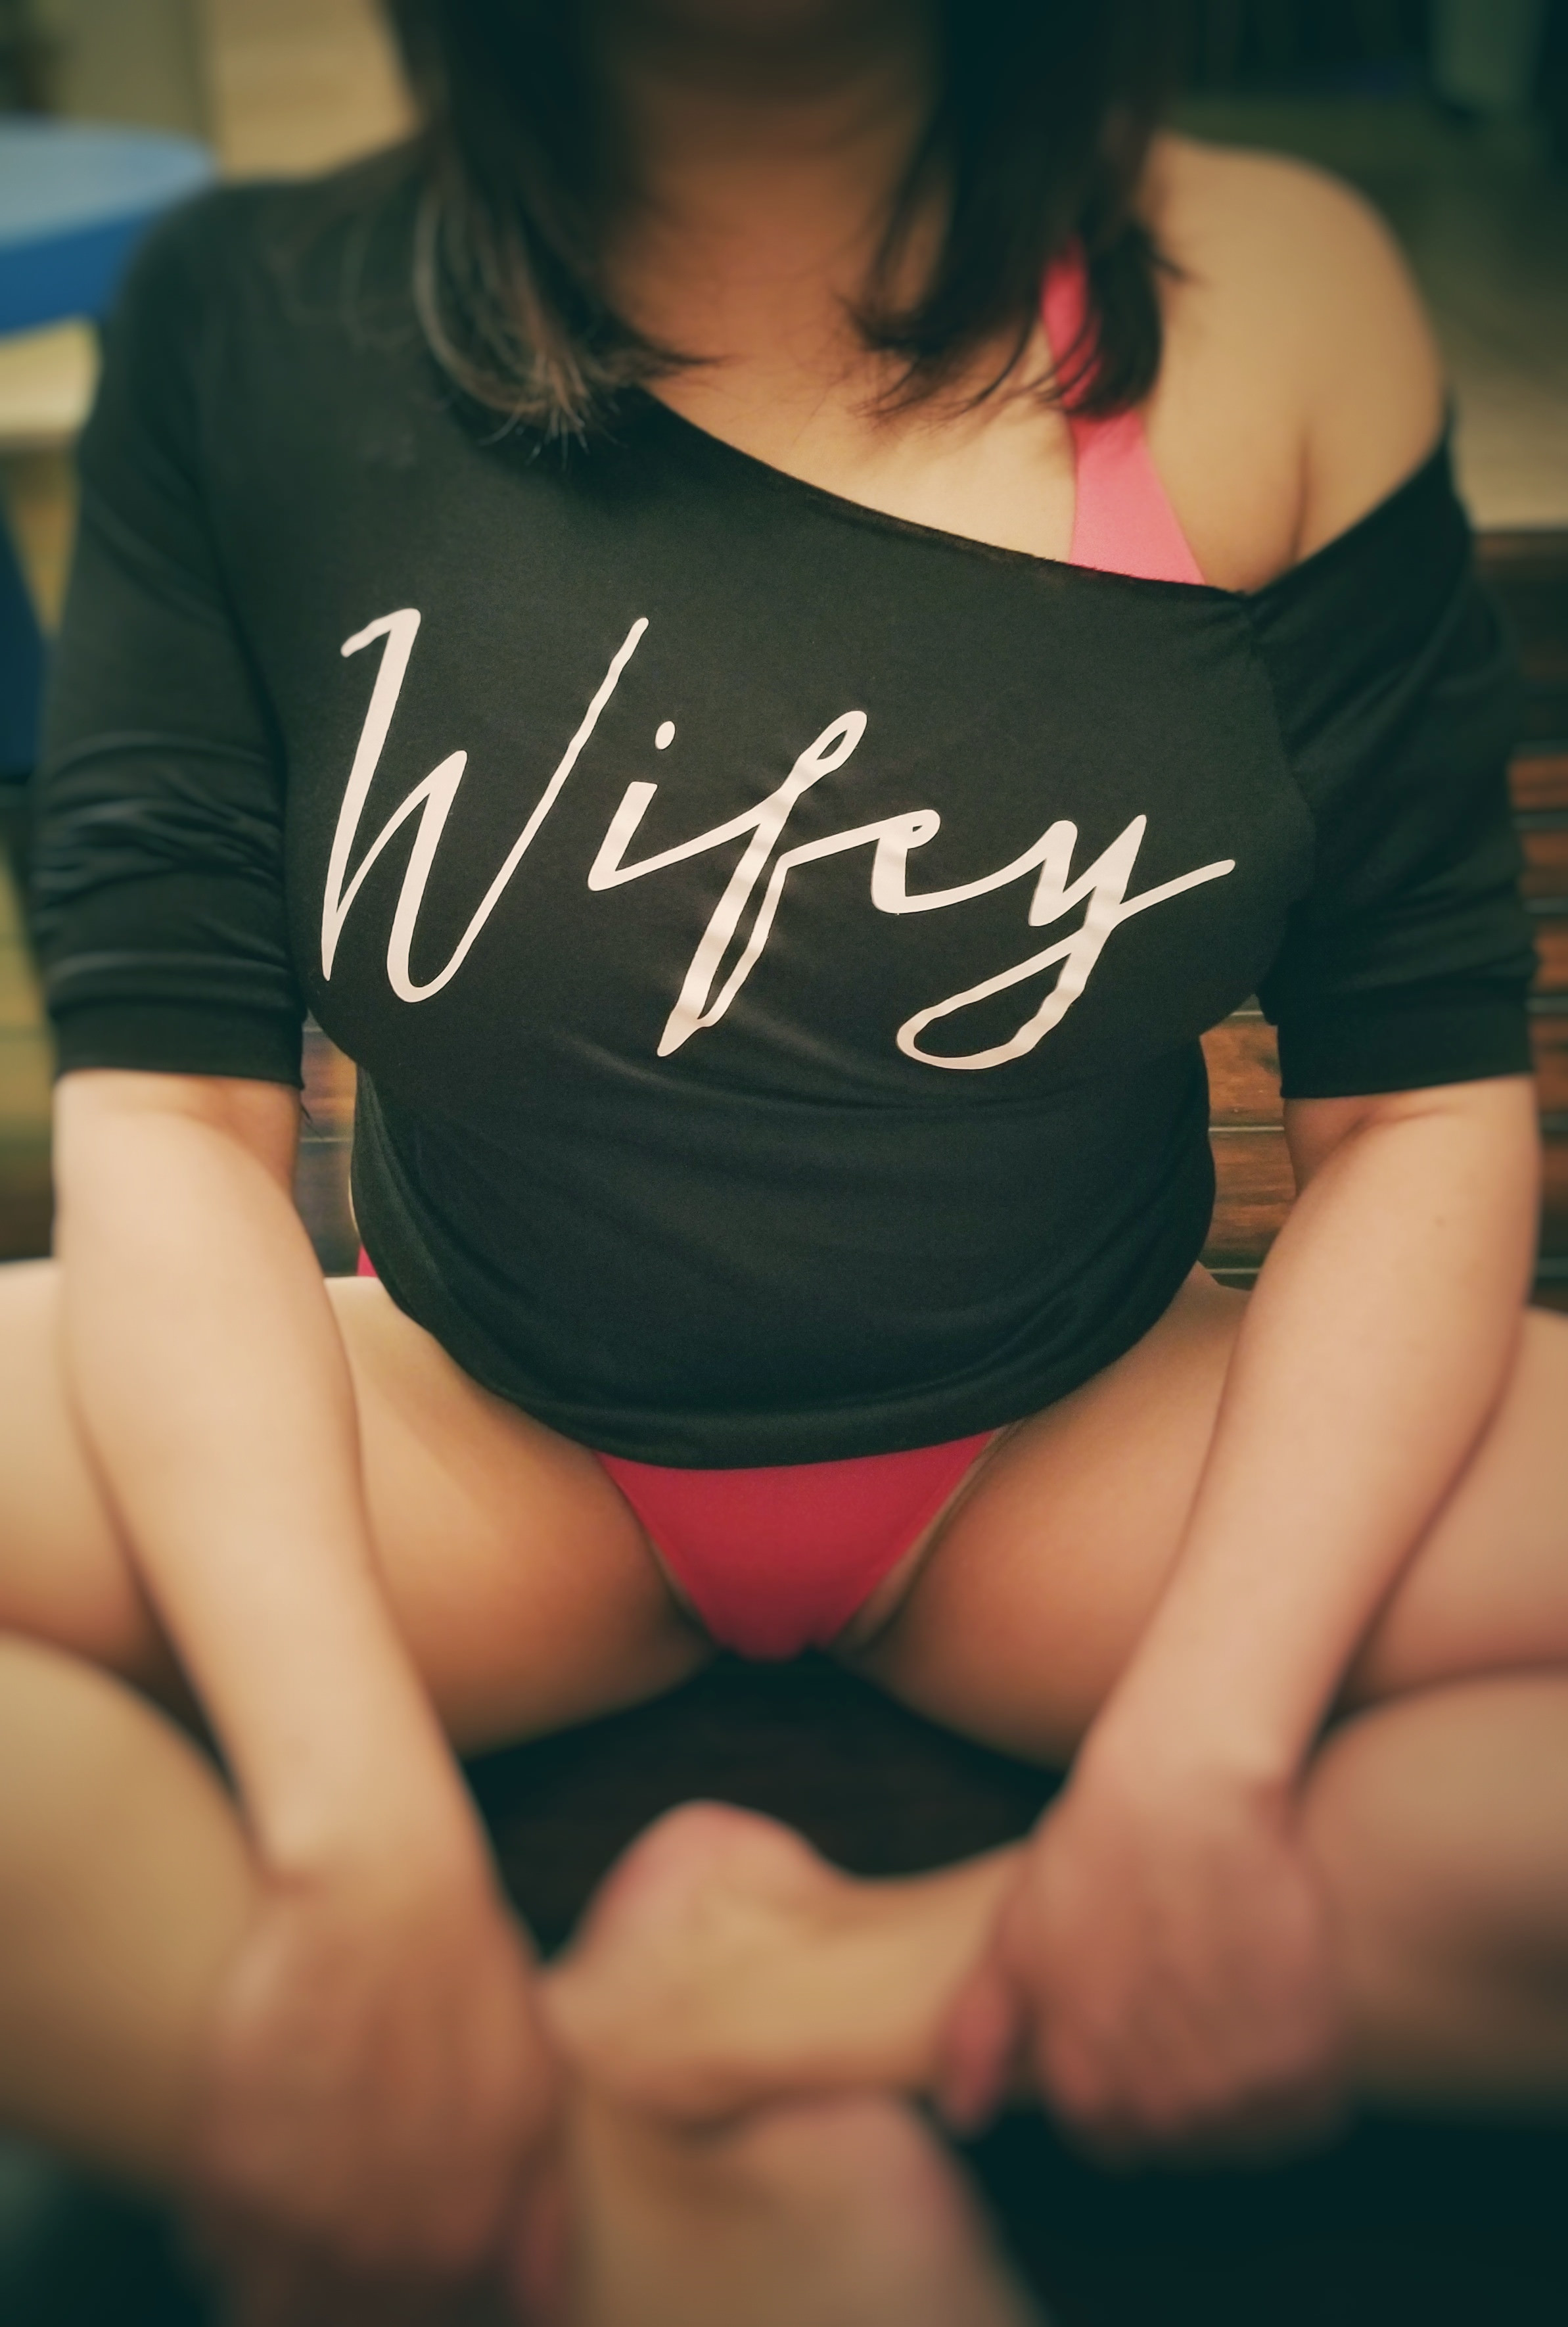 Wifey Porn Photo Eporner